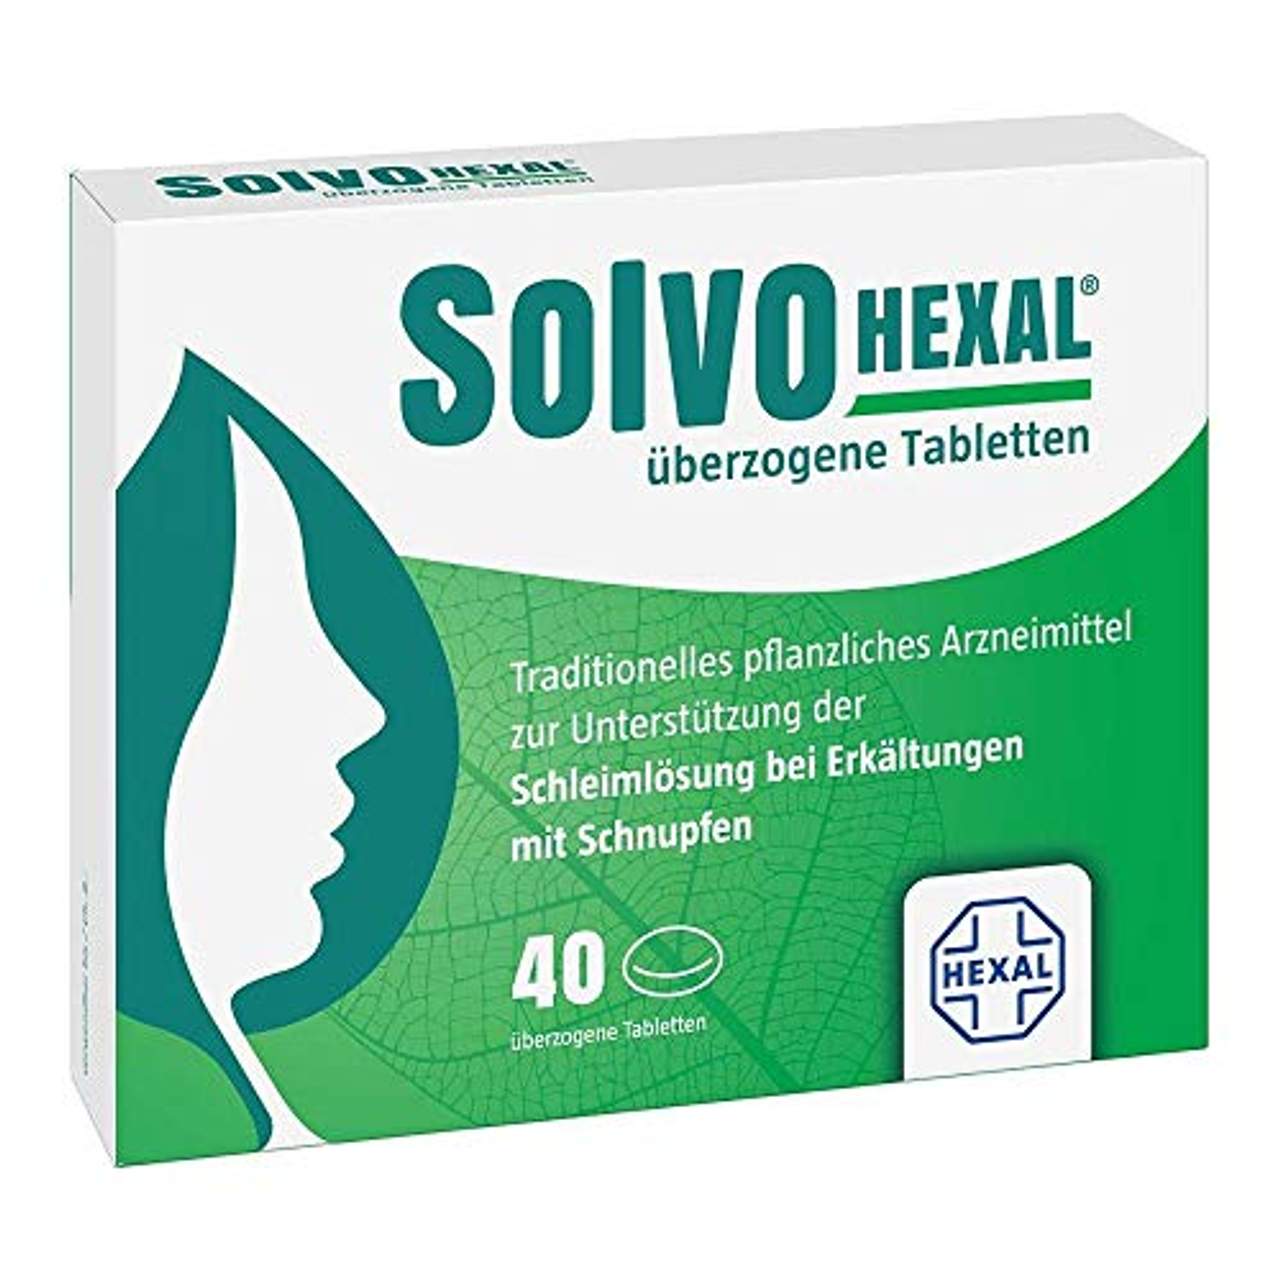 Hexal SolvoHexal überzogene Tabletten